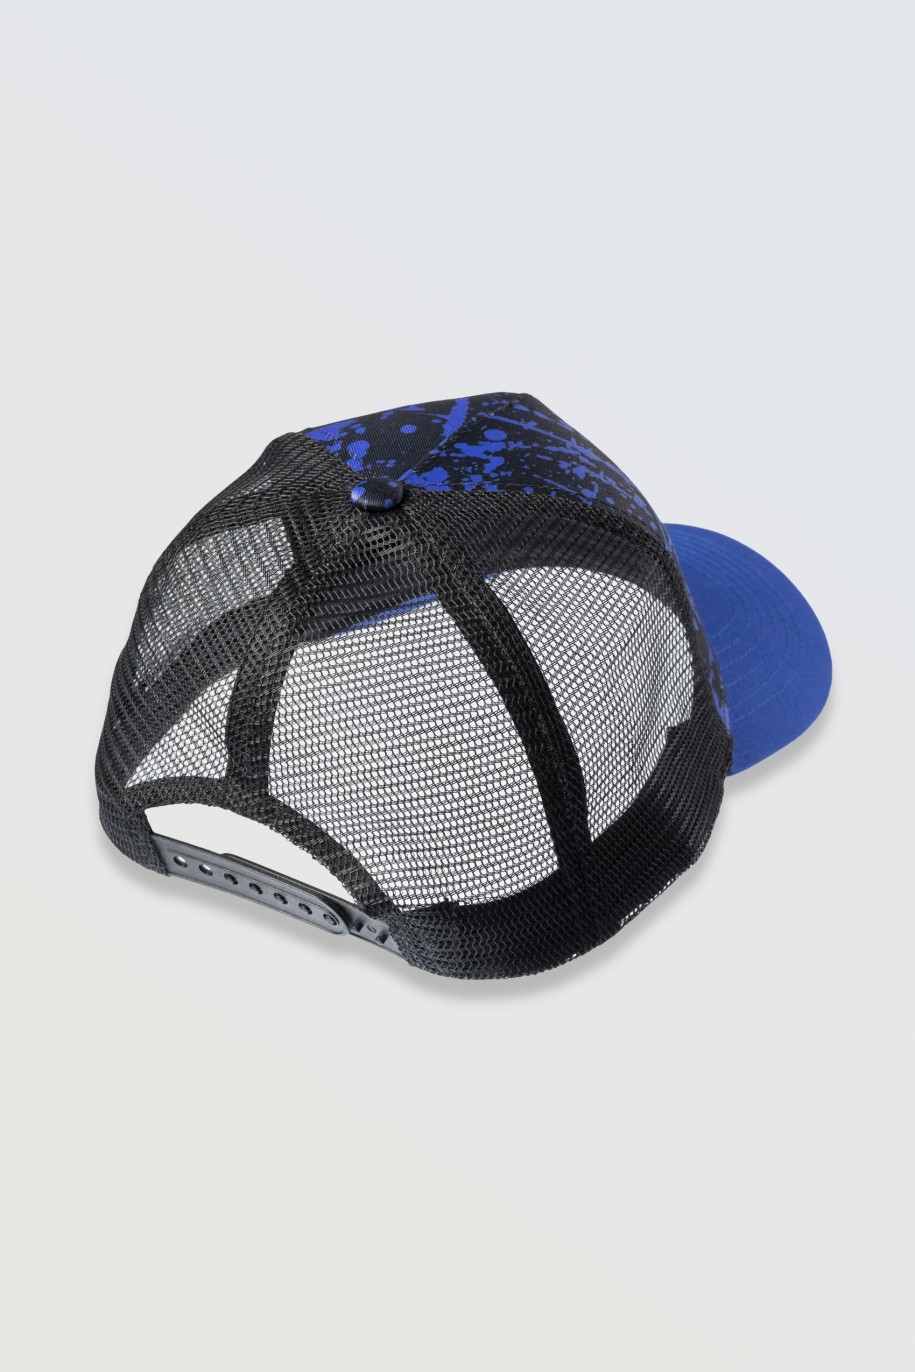 Czarna czapka z daszkiem z niebieską grafiką - 46522